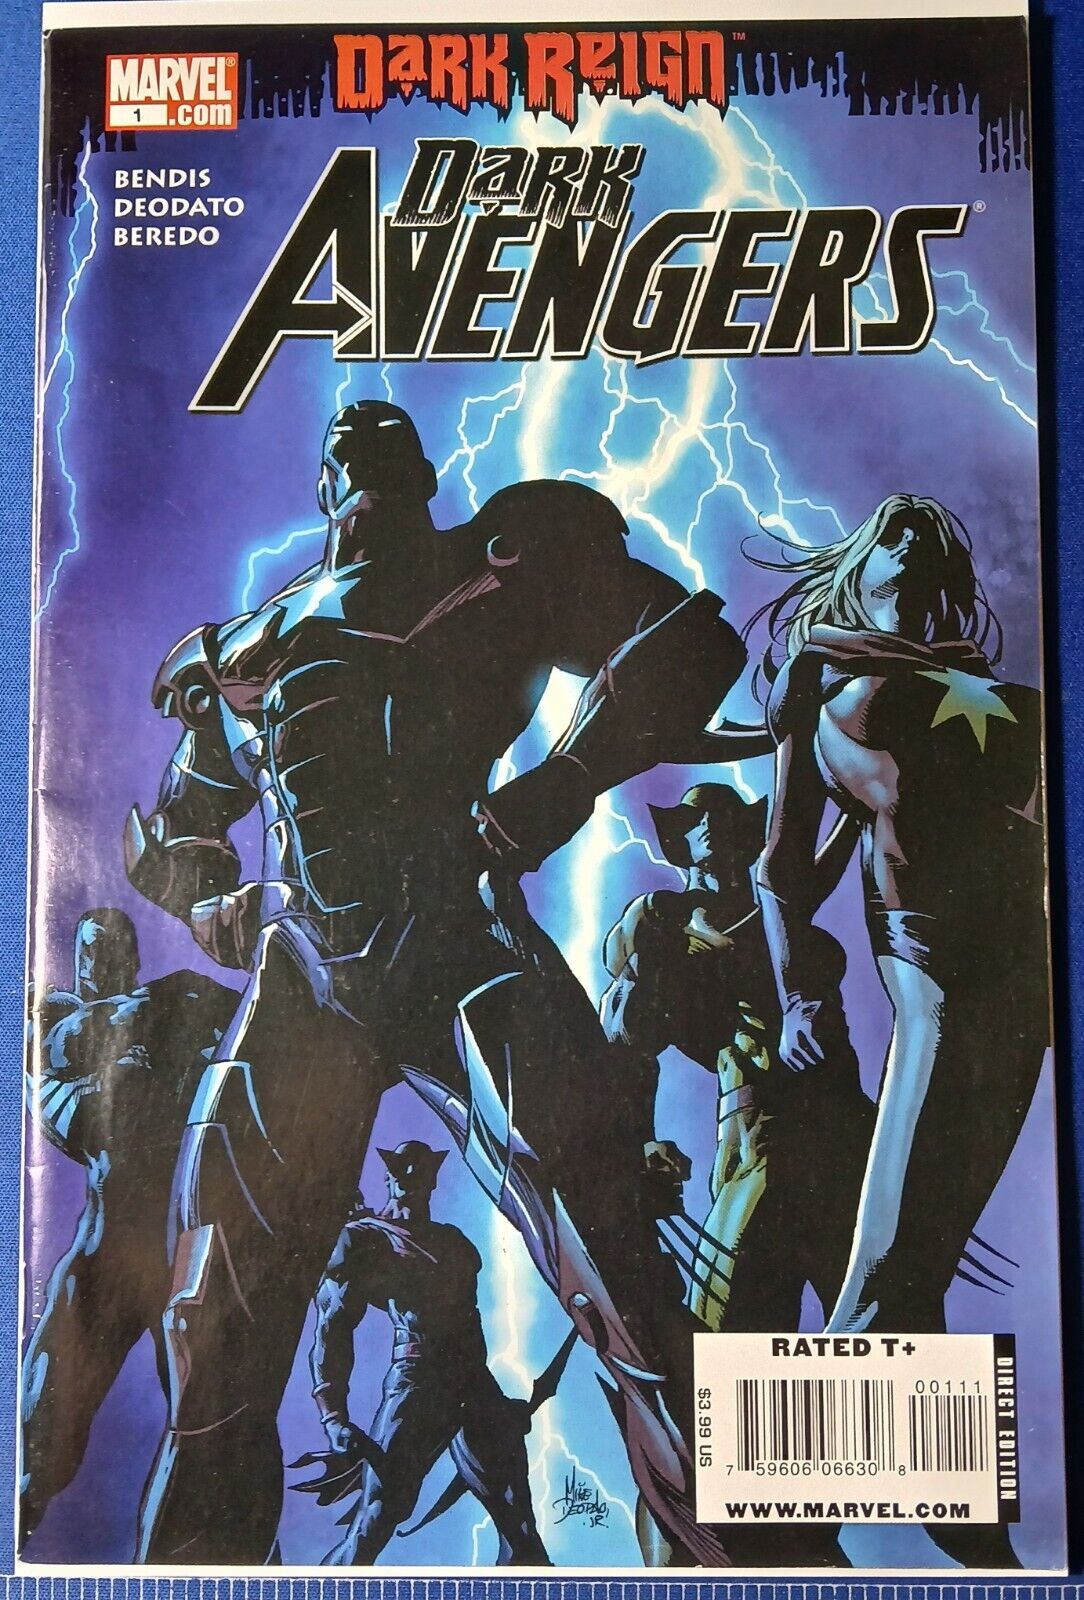 Marvel Dark Avengers #1 KEY 1st App Bendis Deodato Beredo 2009